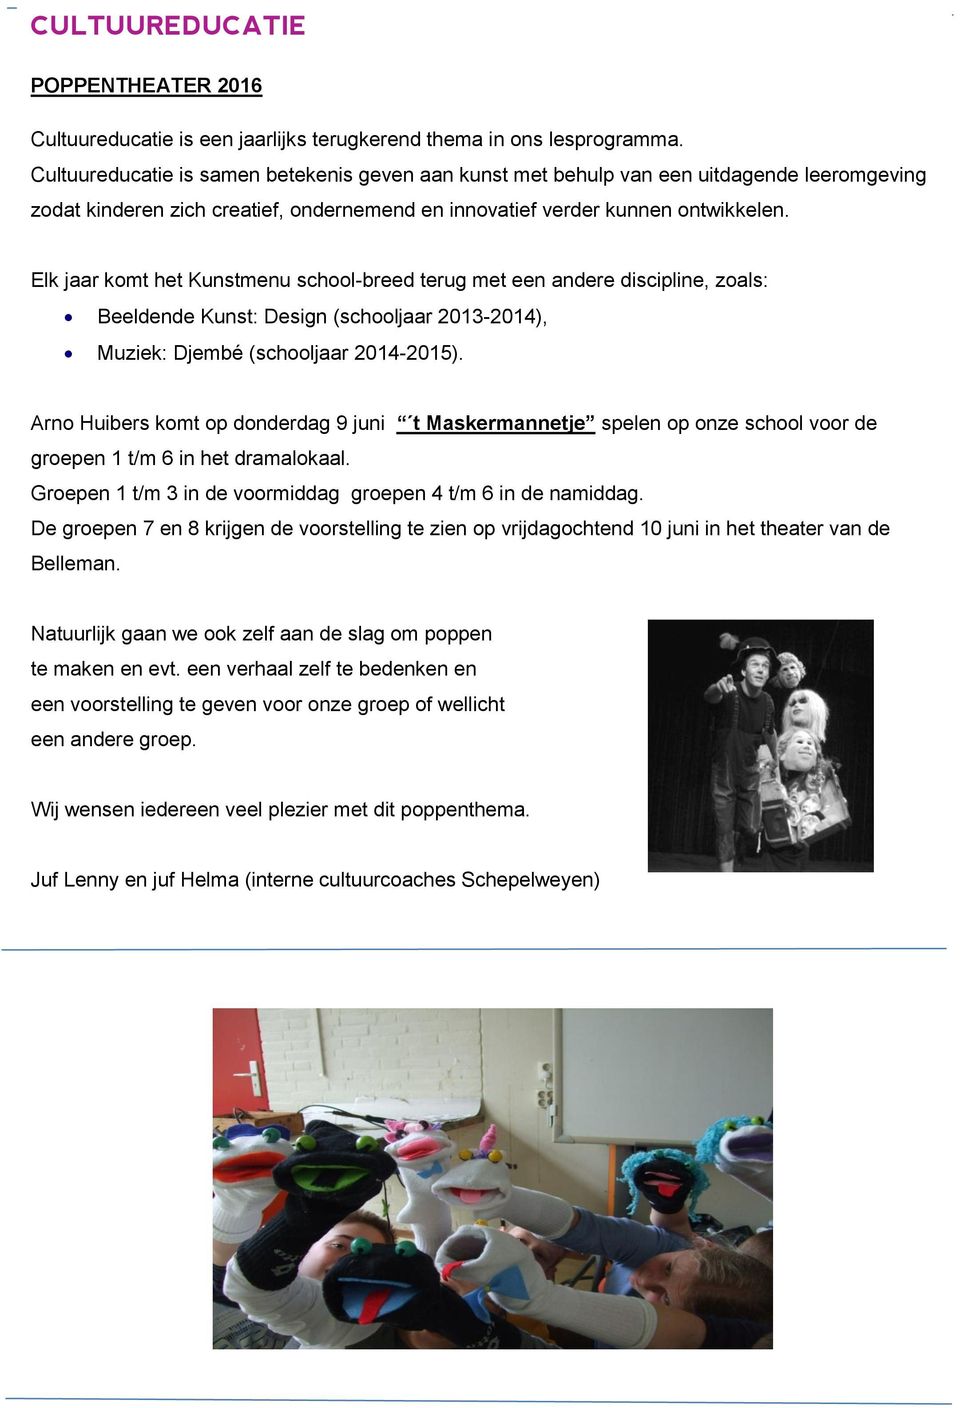 Elk jaar komt het Kunstmenu school-breed terug met een andere discipline, zoals: Beeldende Kunst: Design (schooljaar 2013-2014), Muziek: Djembé (schooljaar 2014-2015).